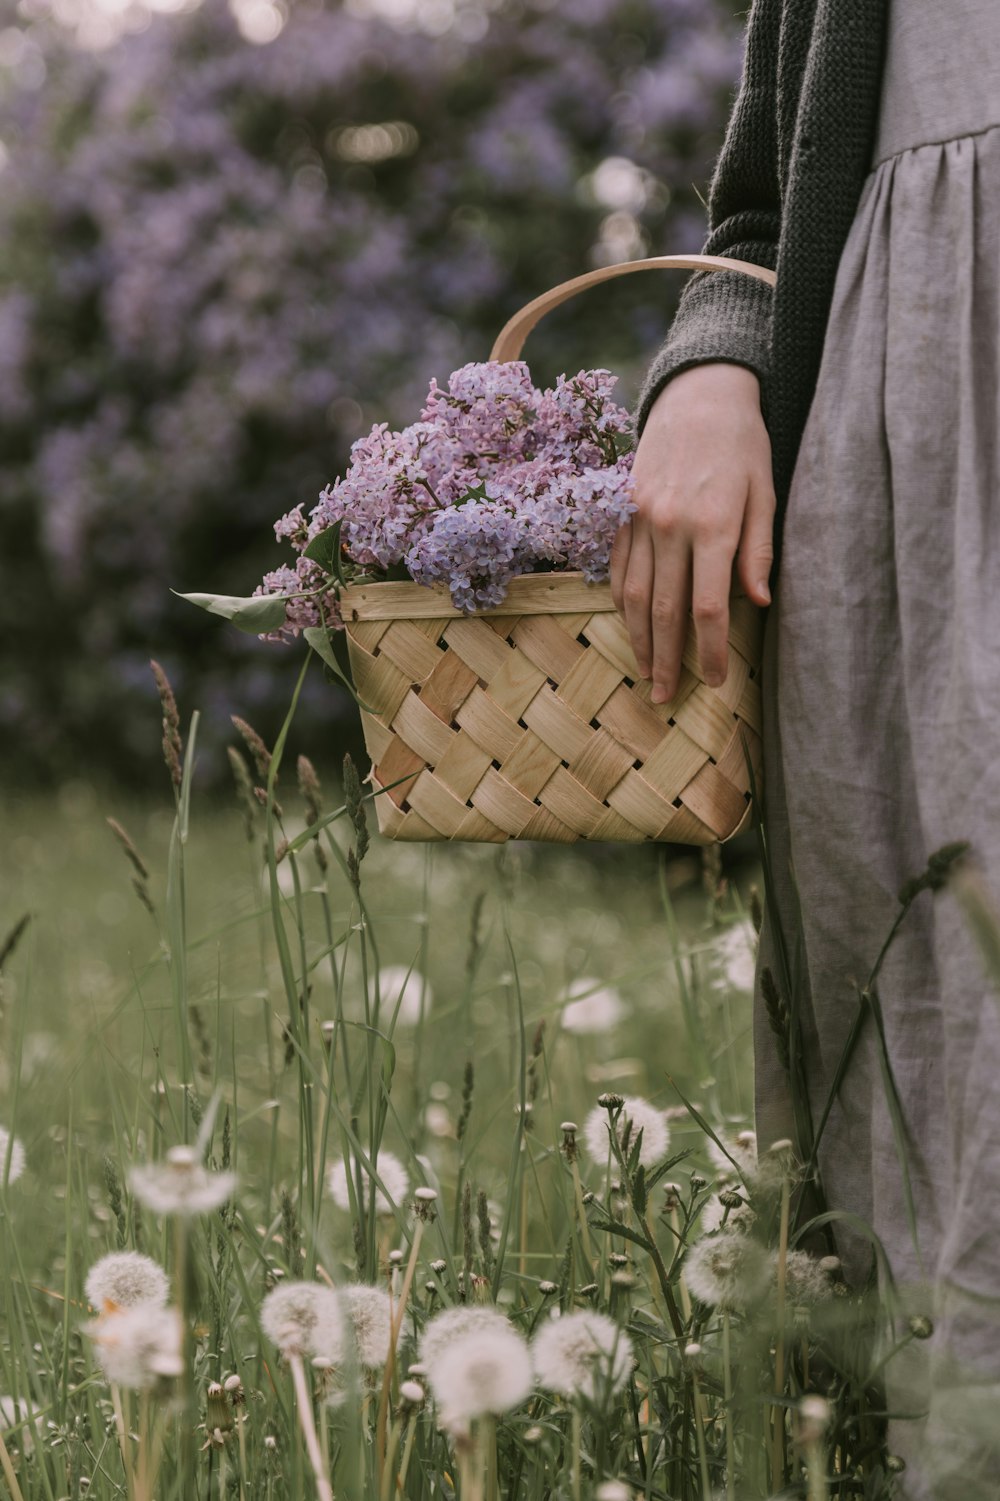 eine Person, die einen Korb mit Blumen darin hält